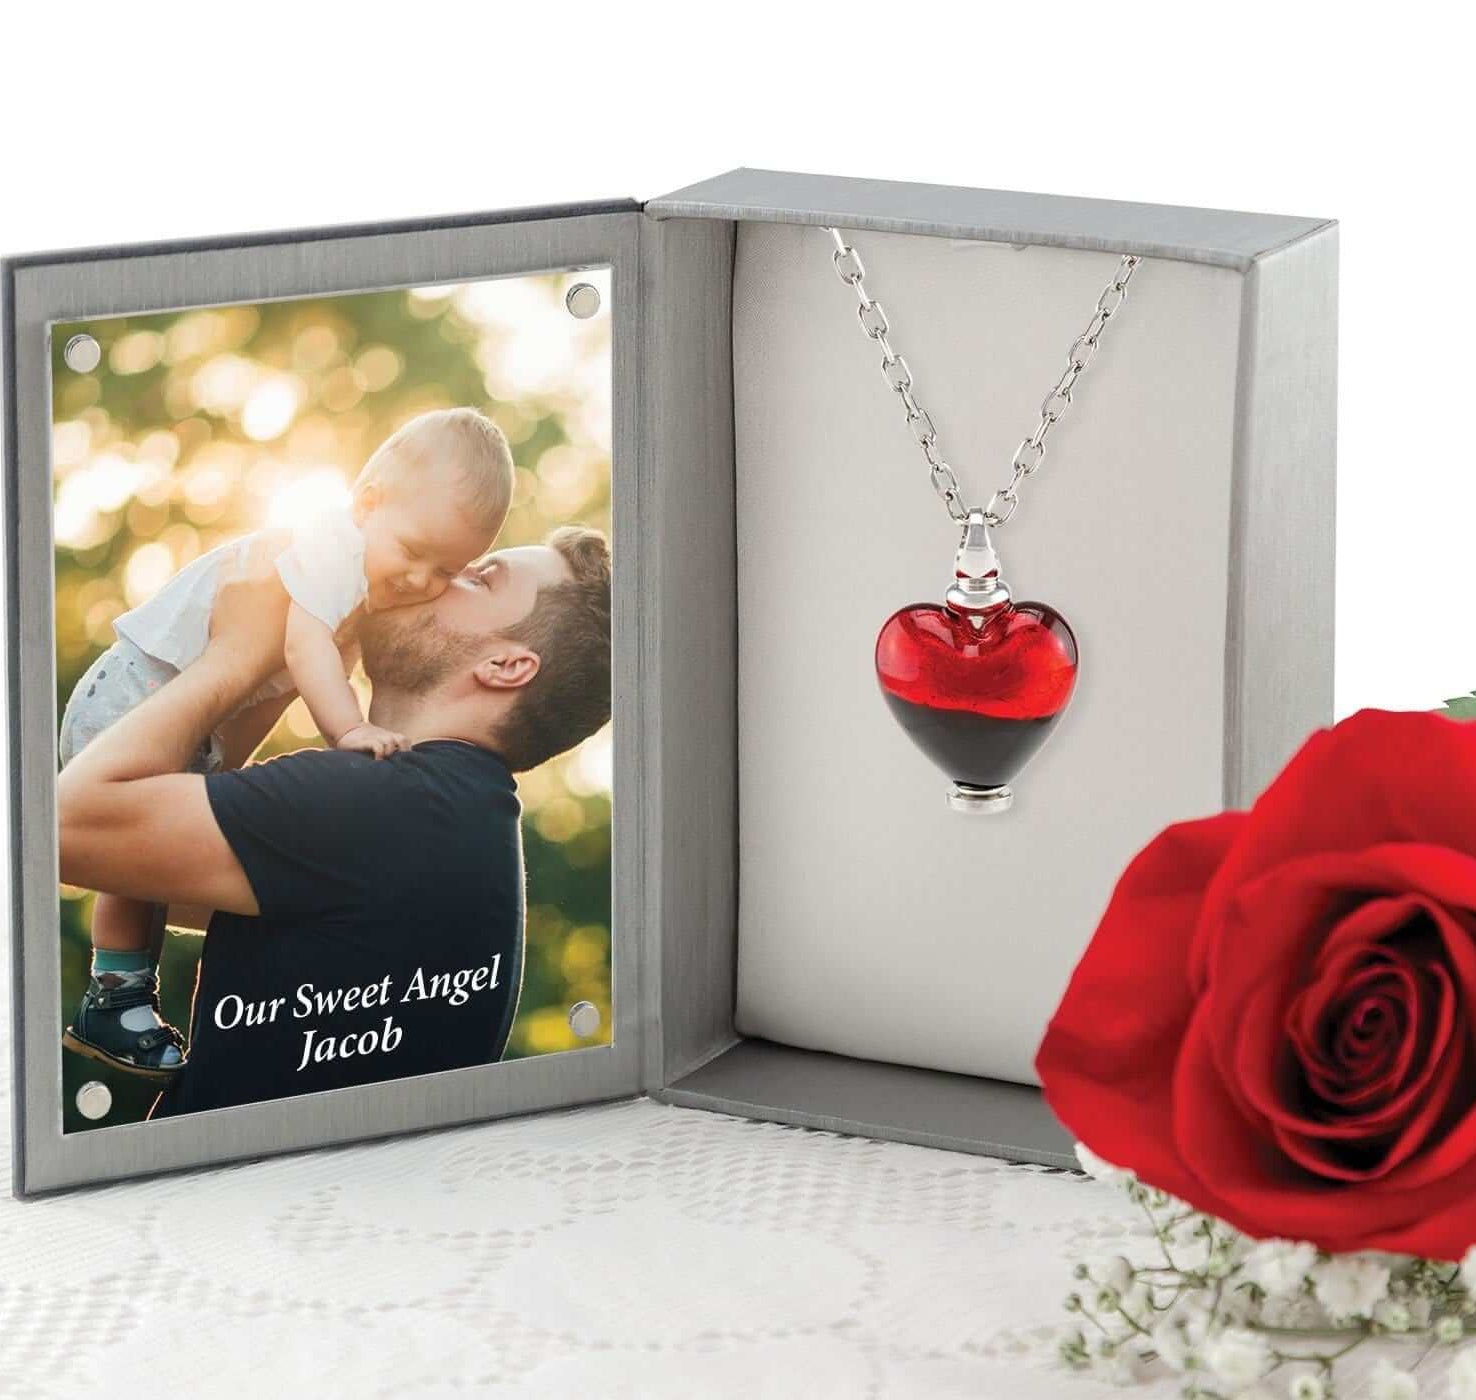 Cara Keepsakes Murano Glass Heart Urn - 'Everlasting Love' in jewelry box